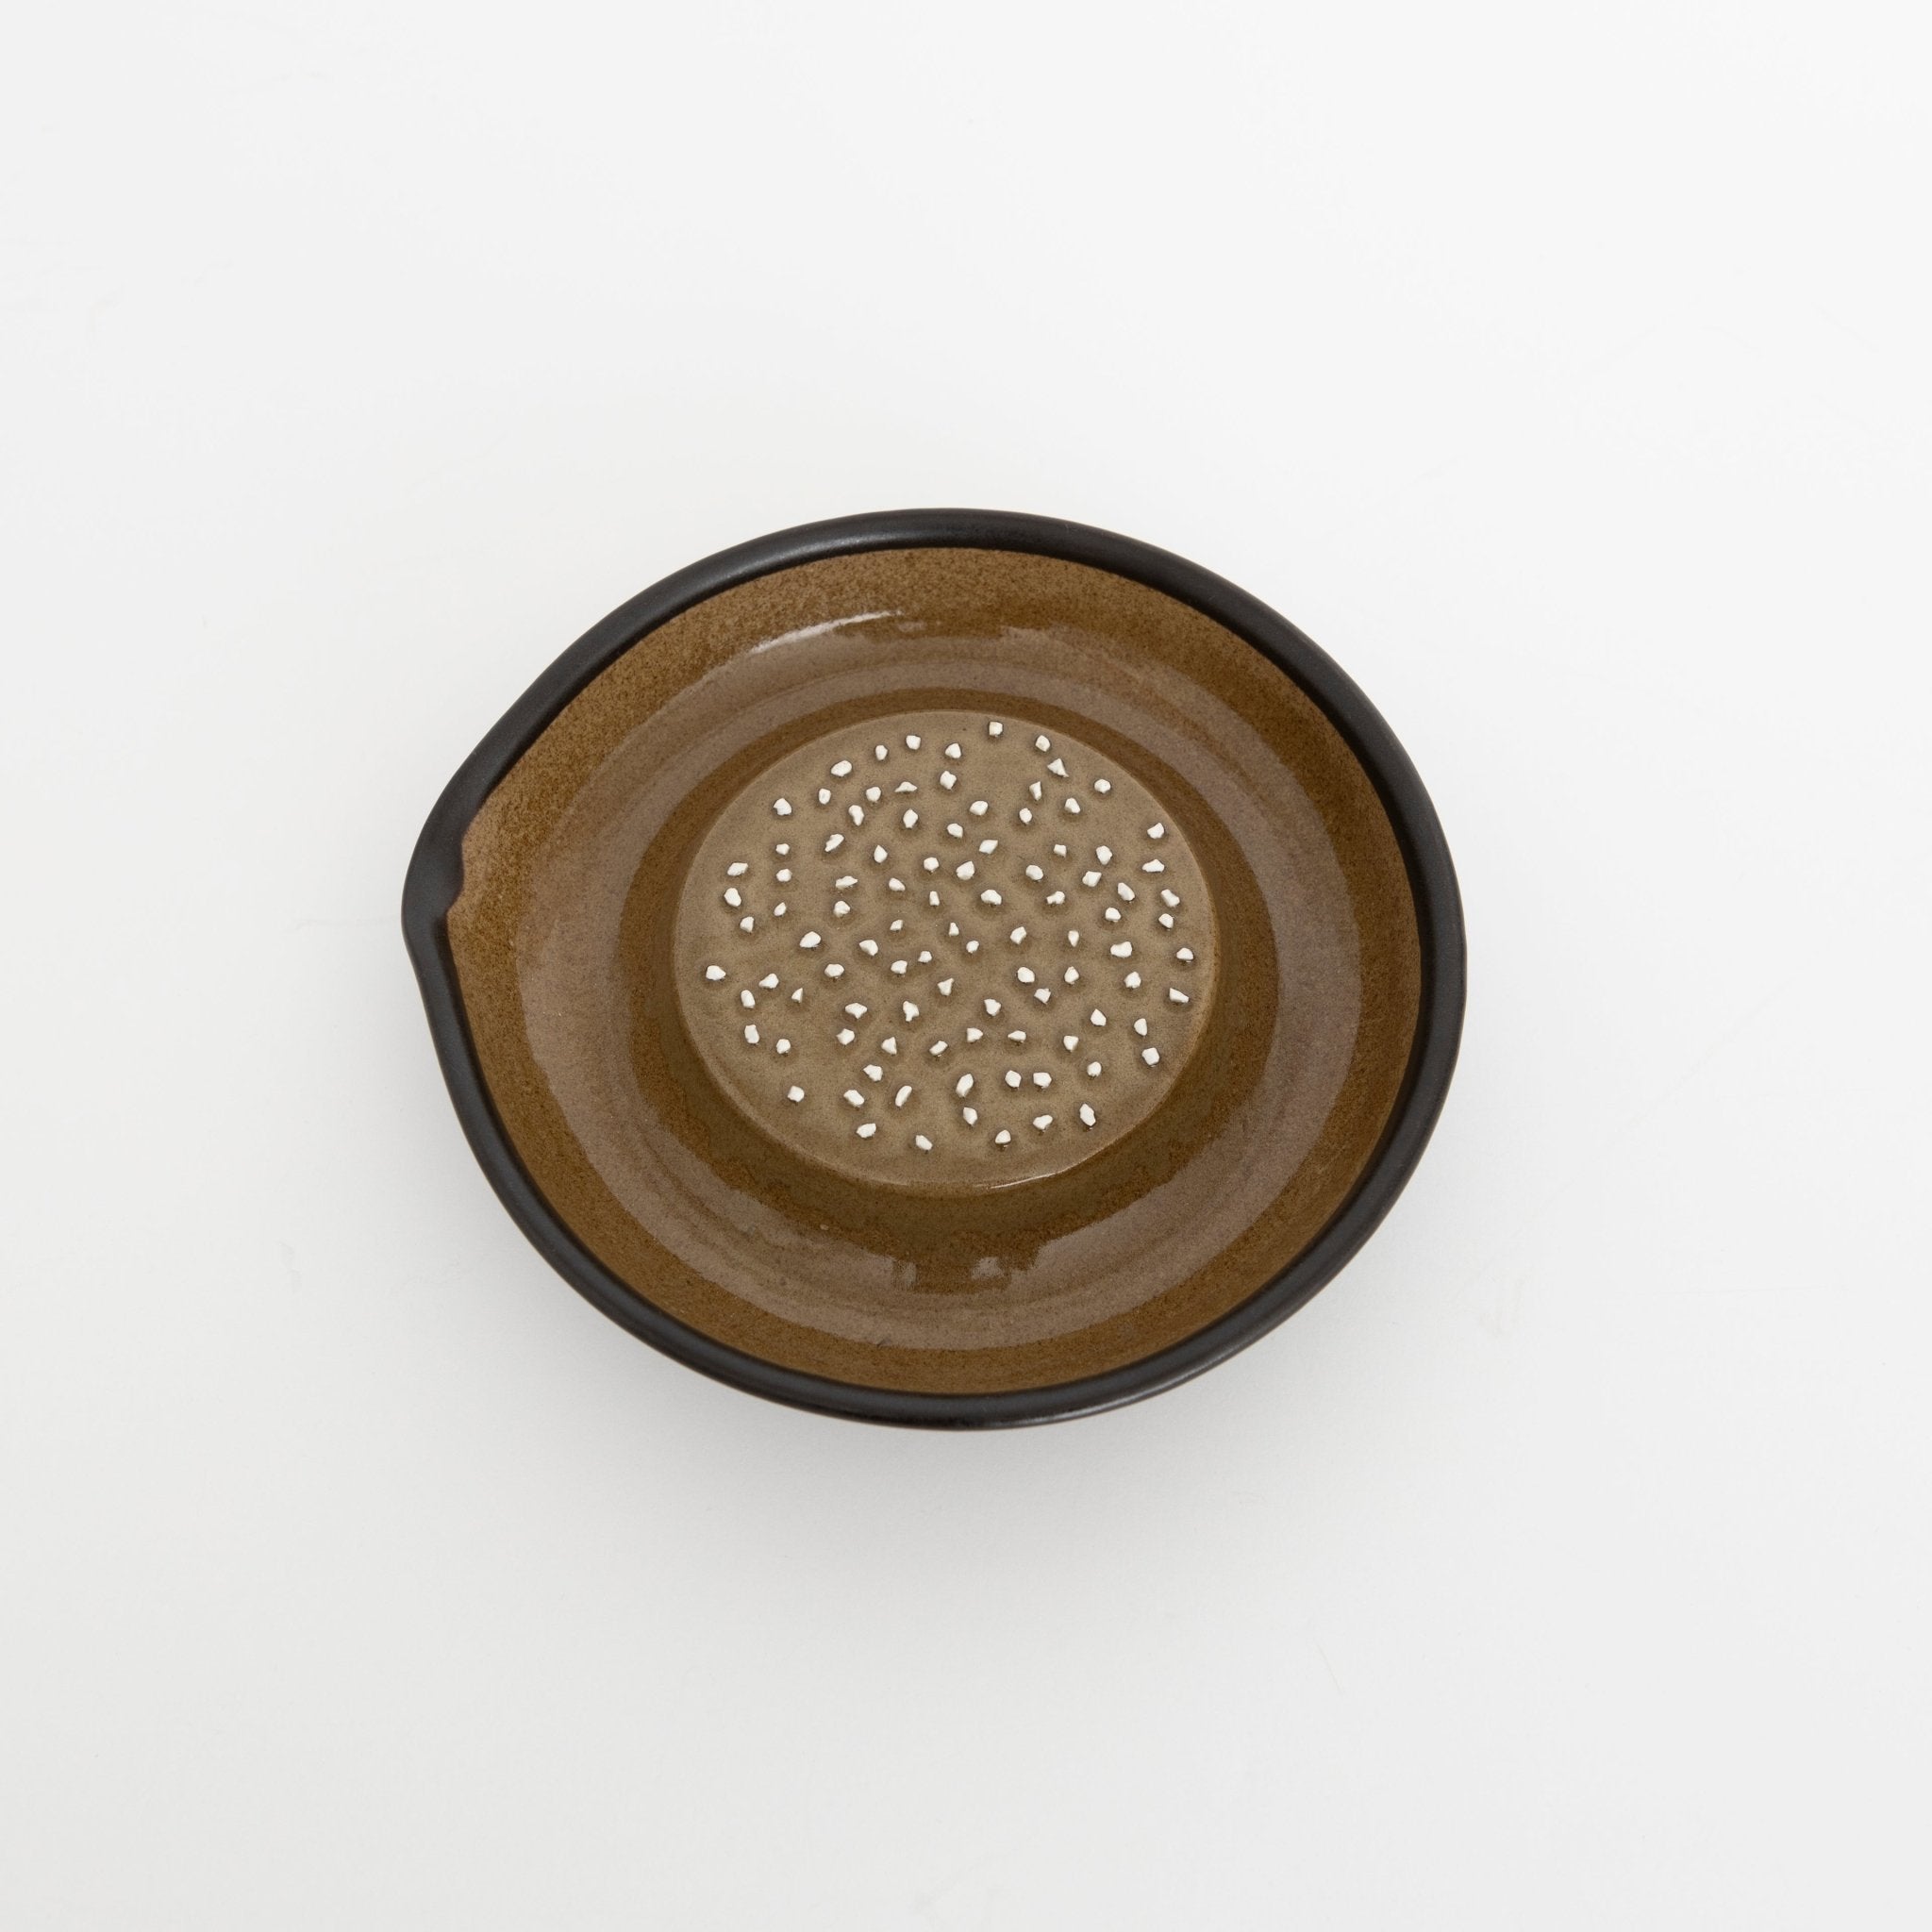 Japanese ceramic grater Oroshi black, MUJUN